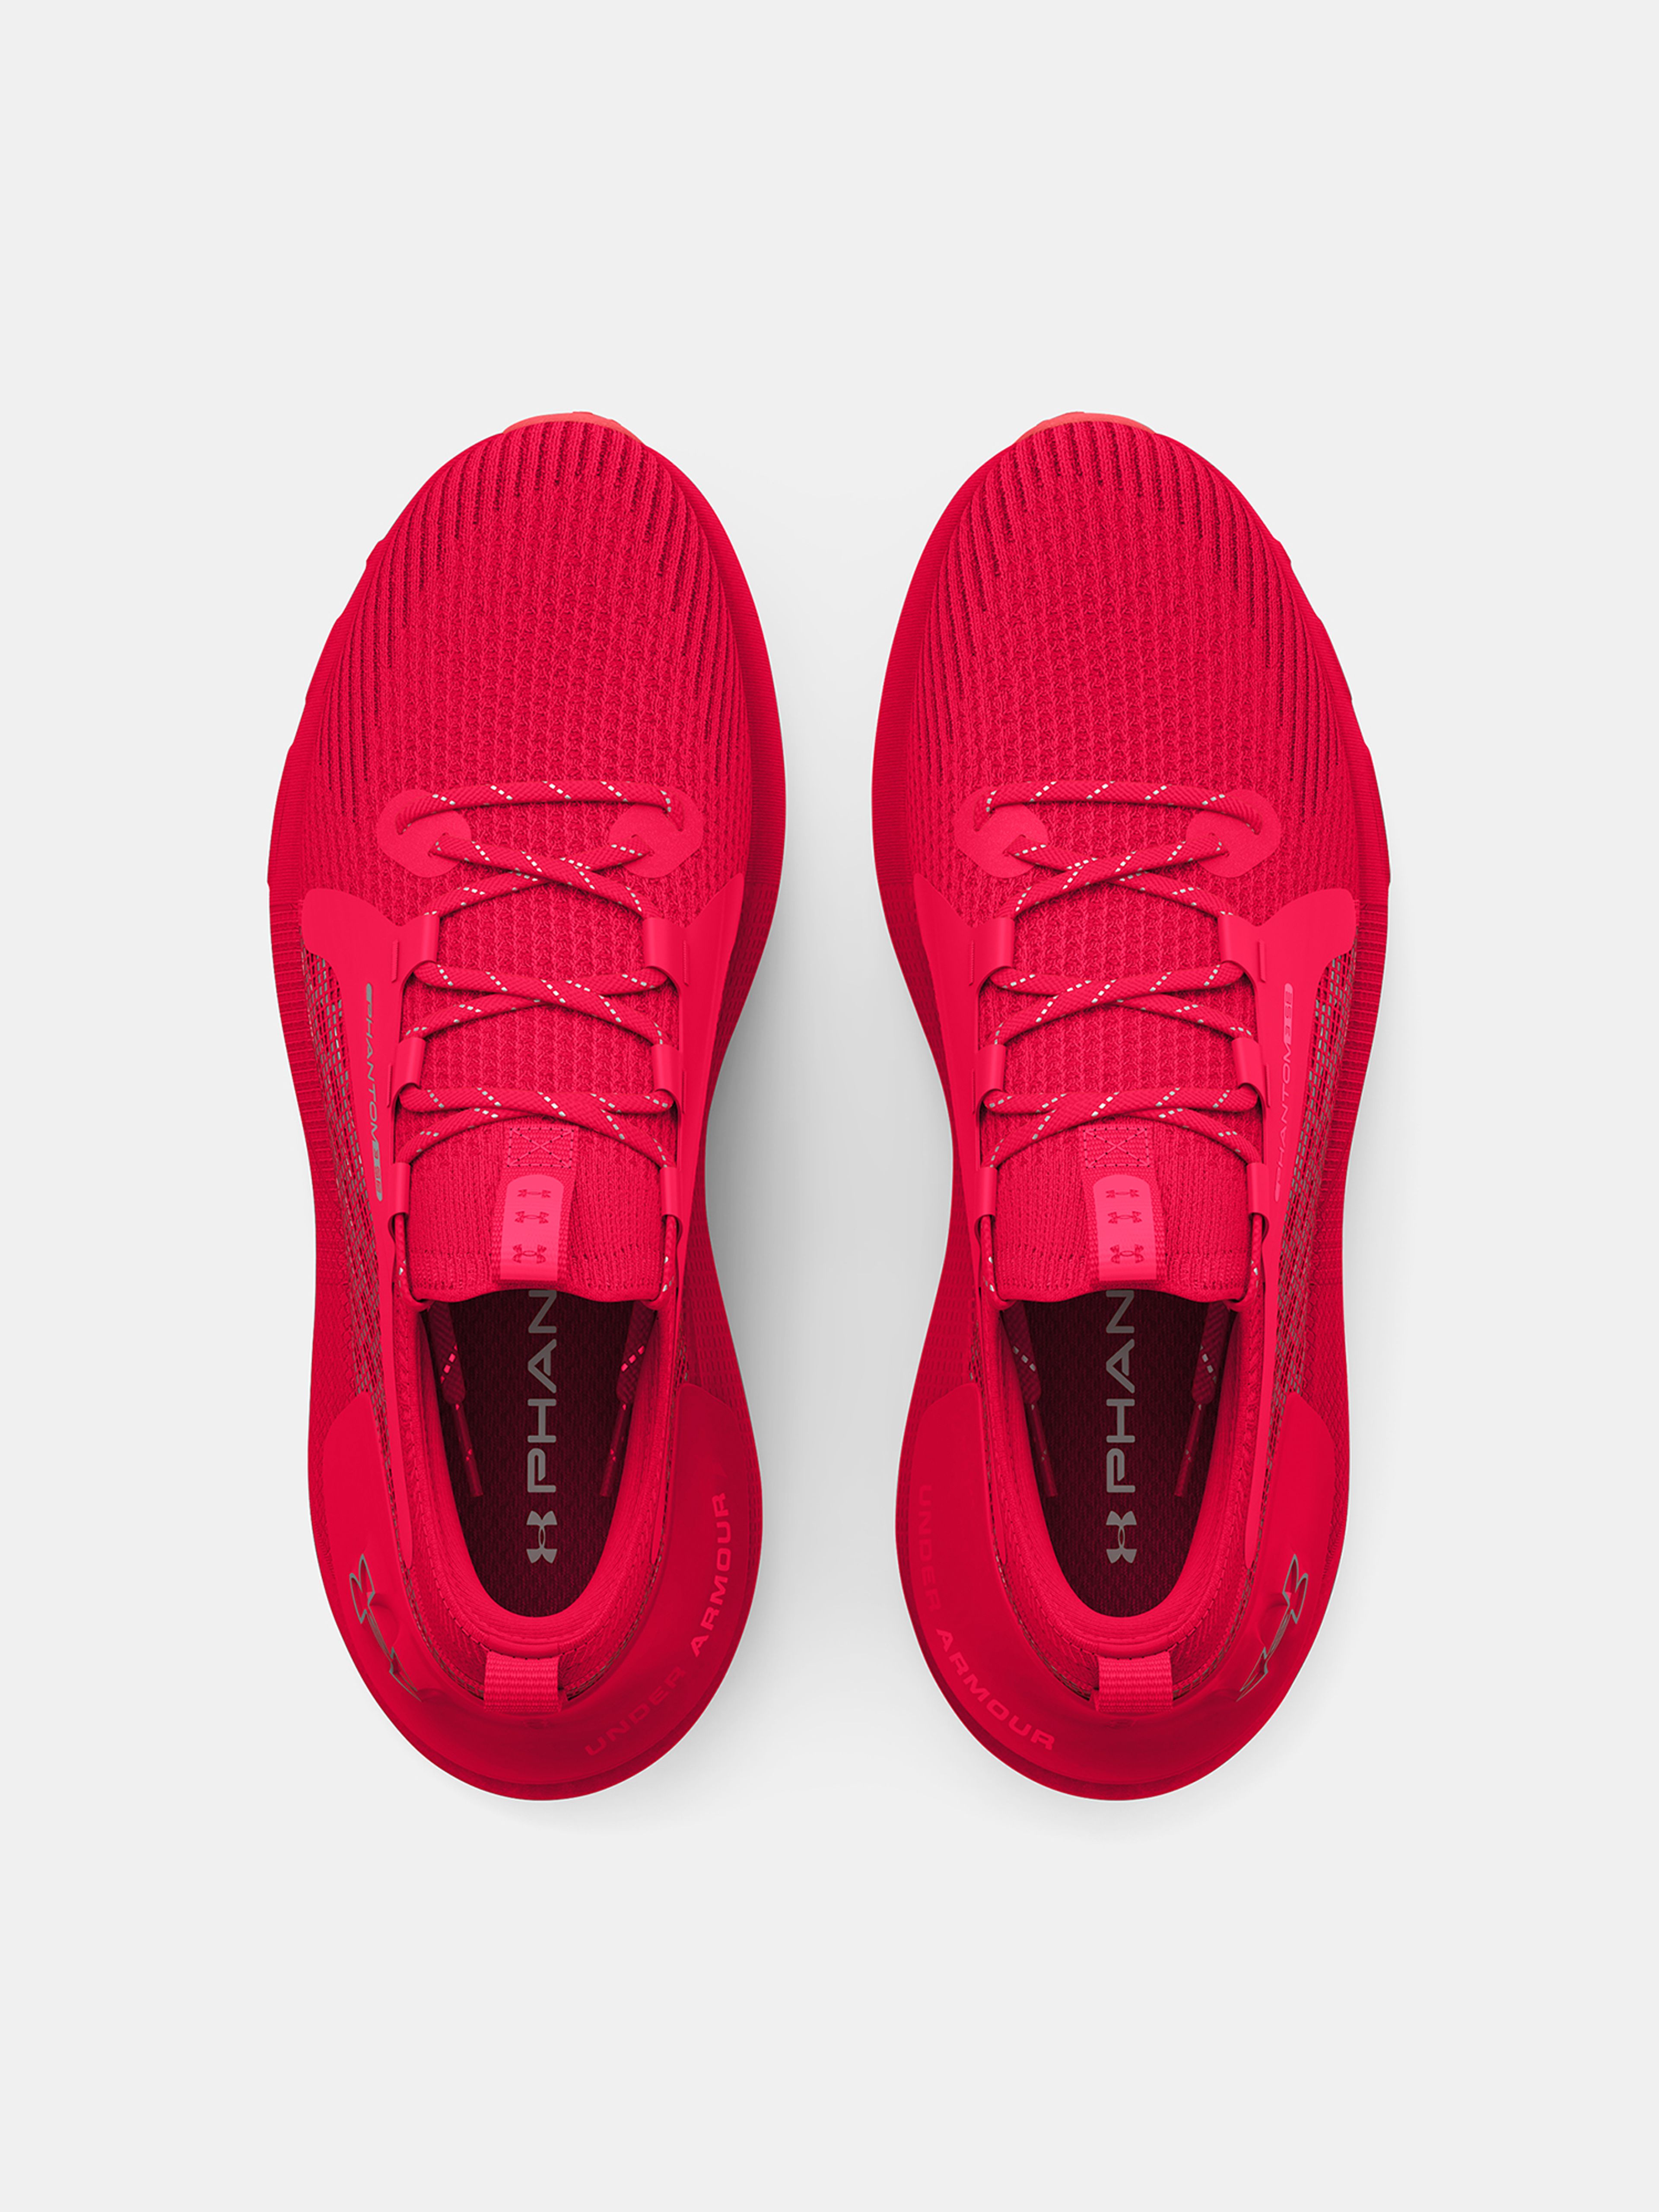  HOVR Phantom 3 SE-RED - men's running shoes - UNDER ARMOUR  - 120.06 € - outdoorové oblečení a vybavení shop